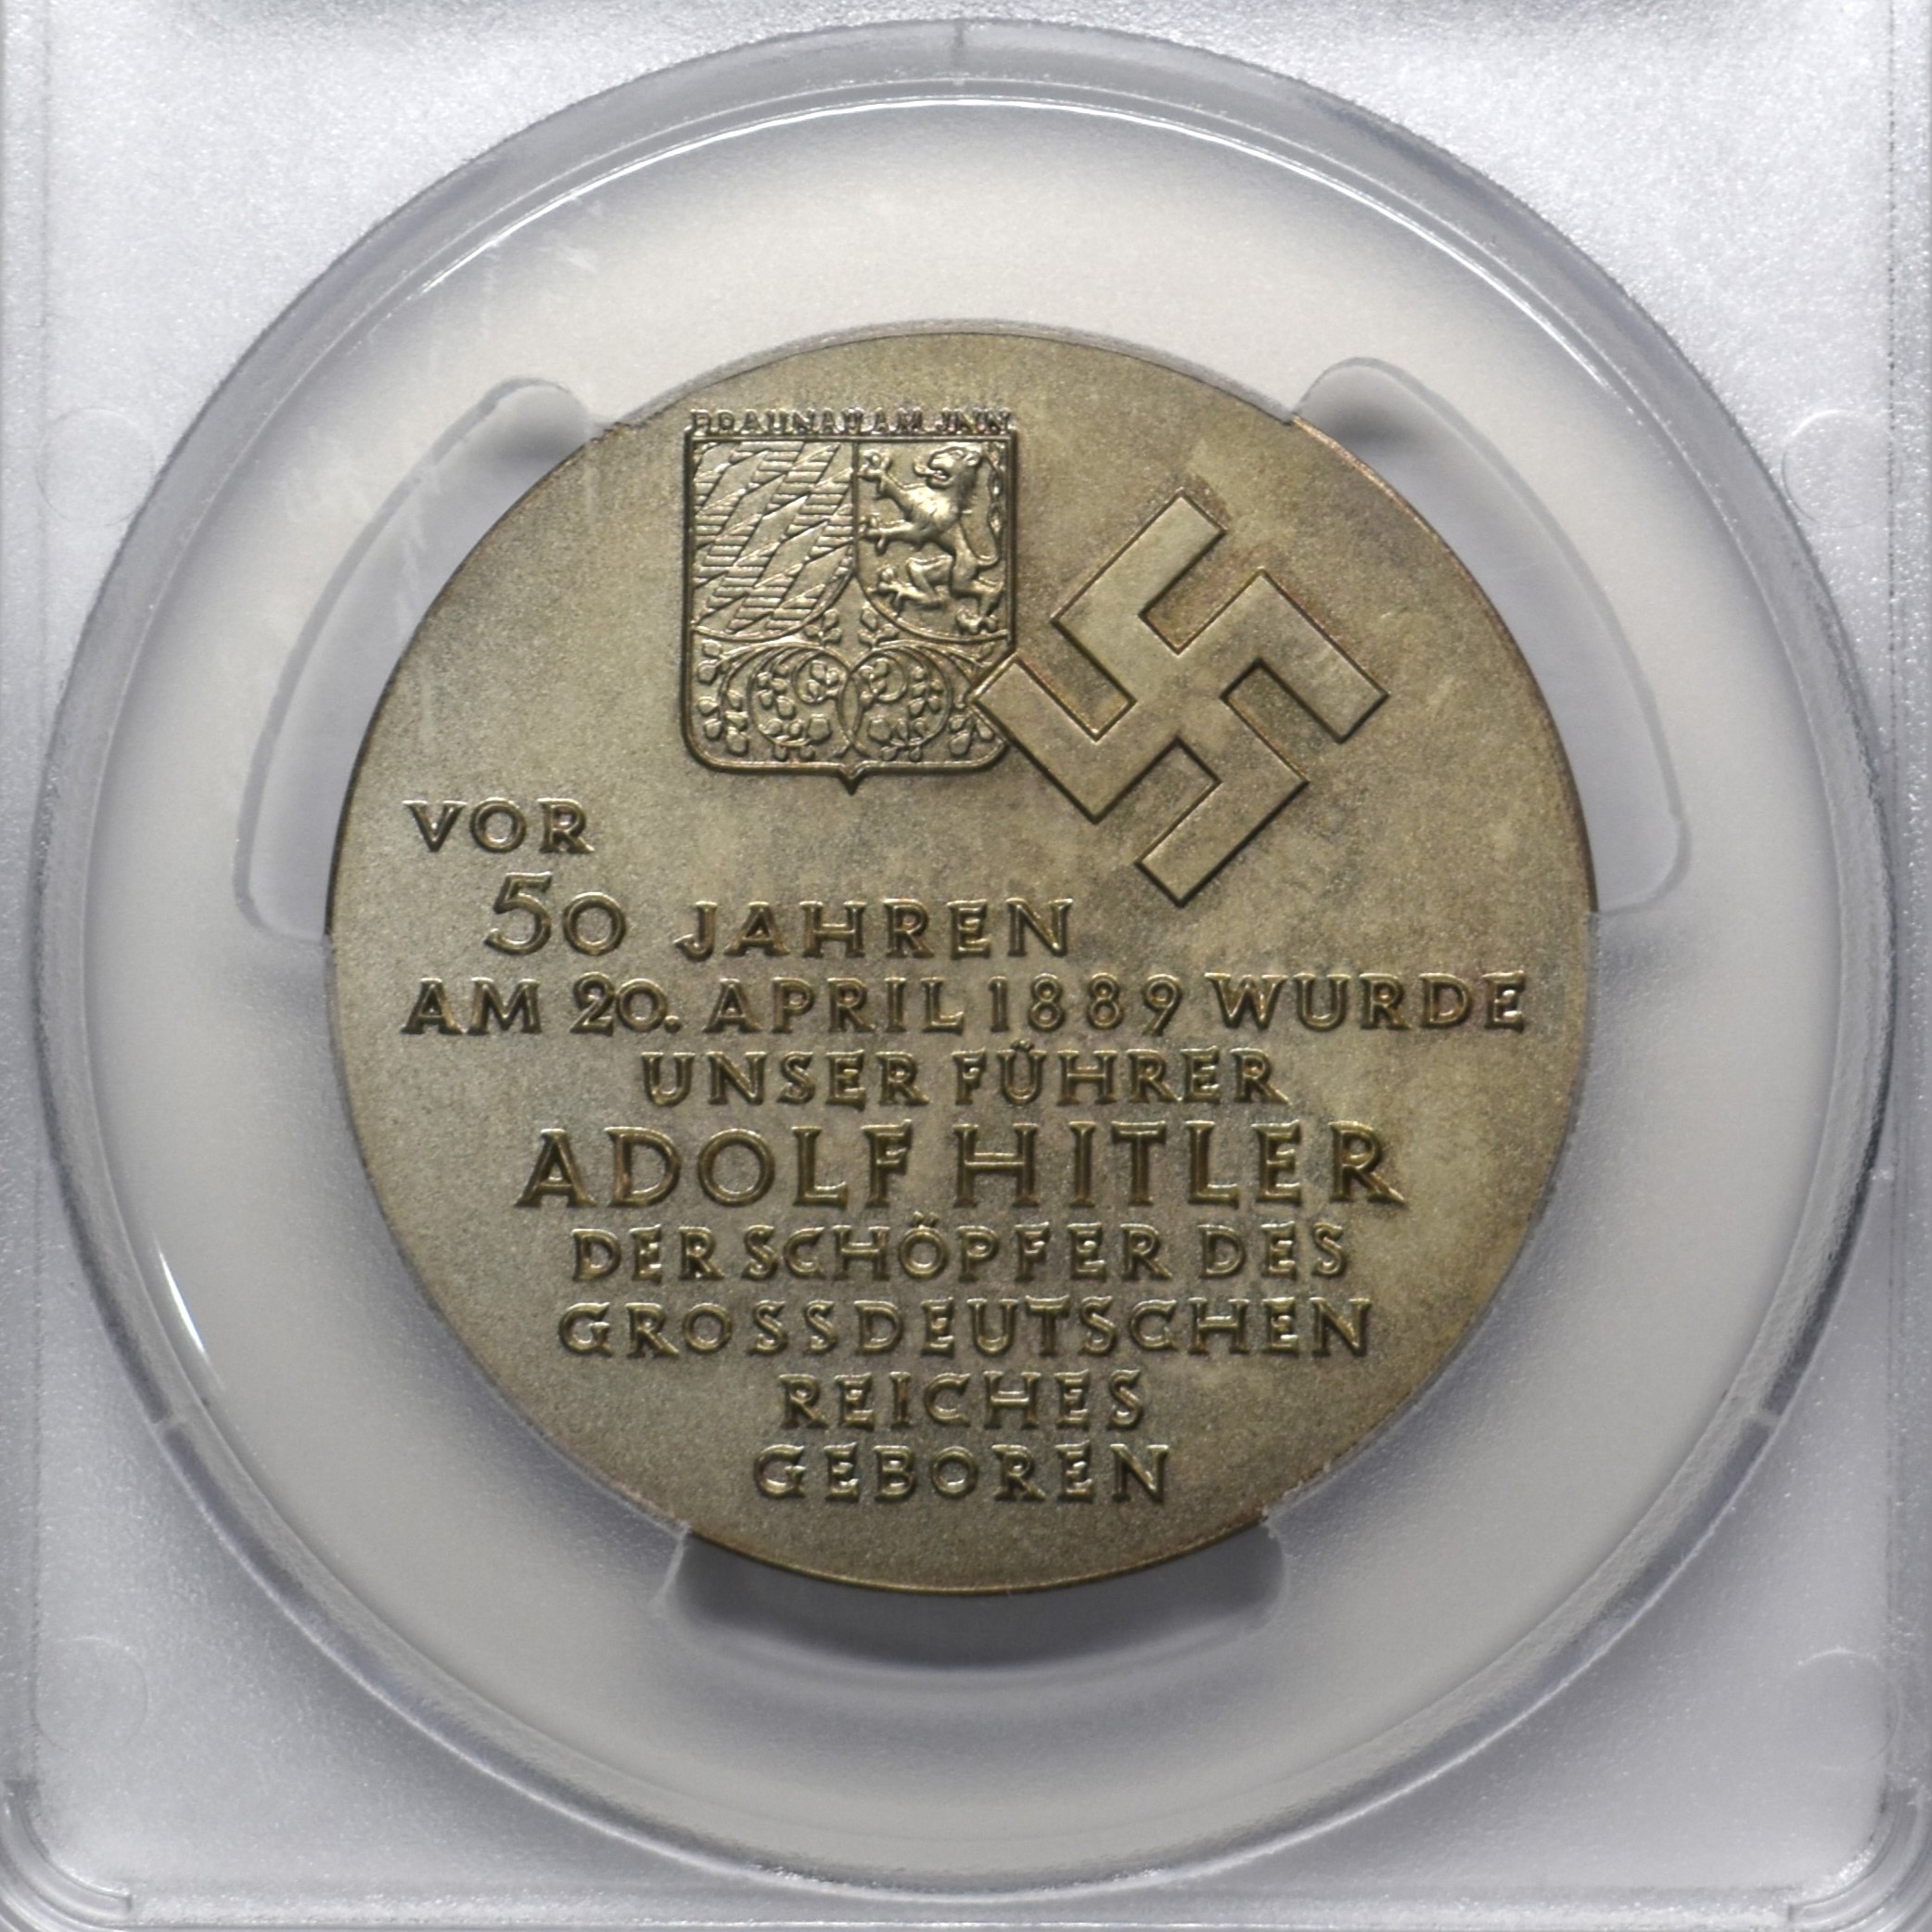 1939年 アドルフ・ヒトラー 生誕50年記念 銀メダル SP66 PCGS